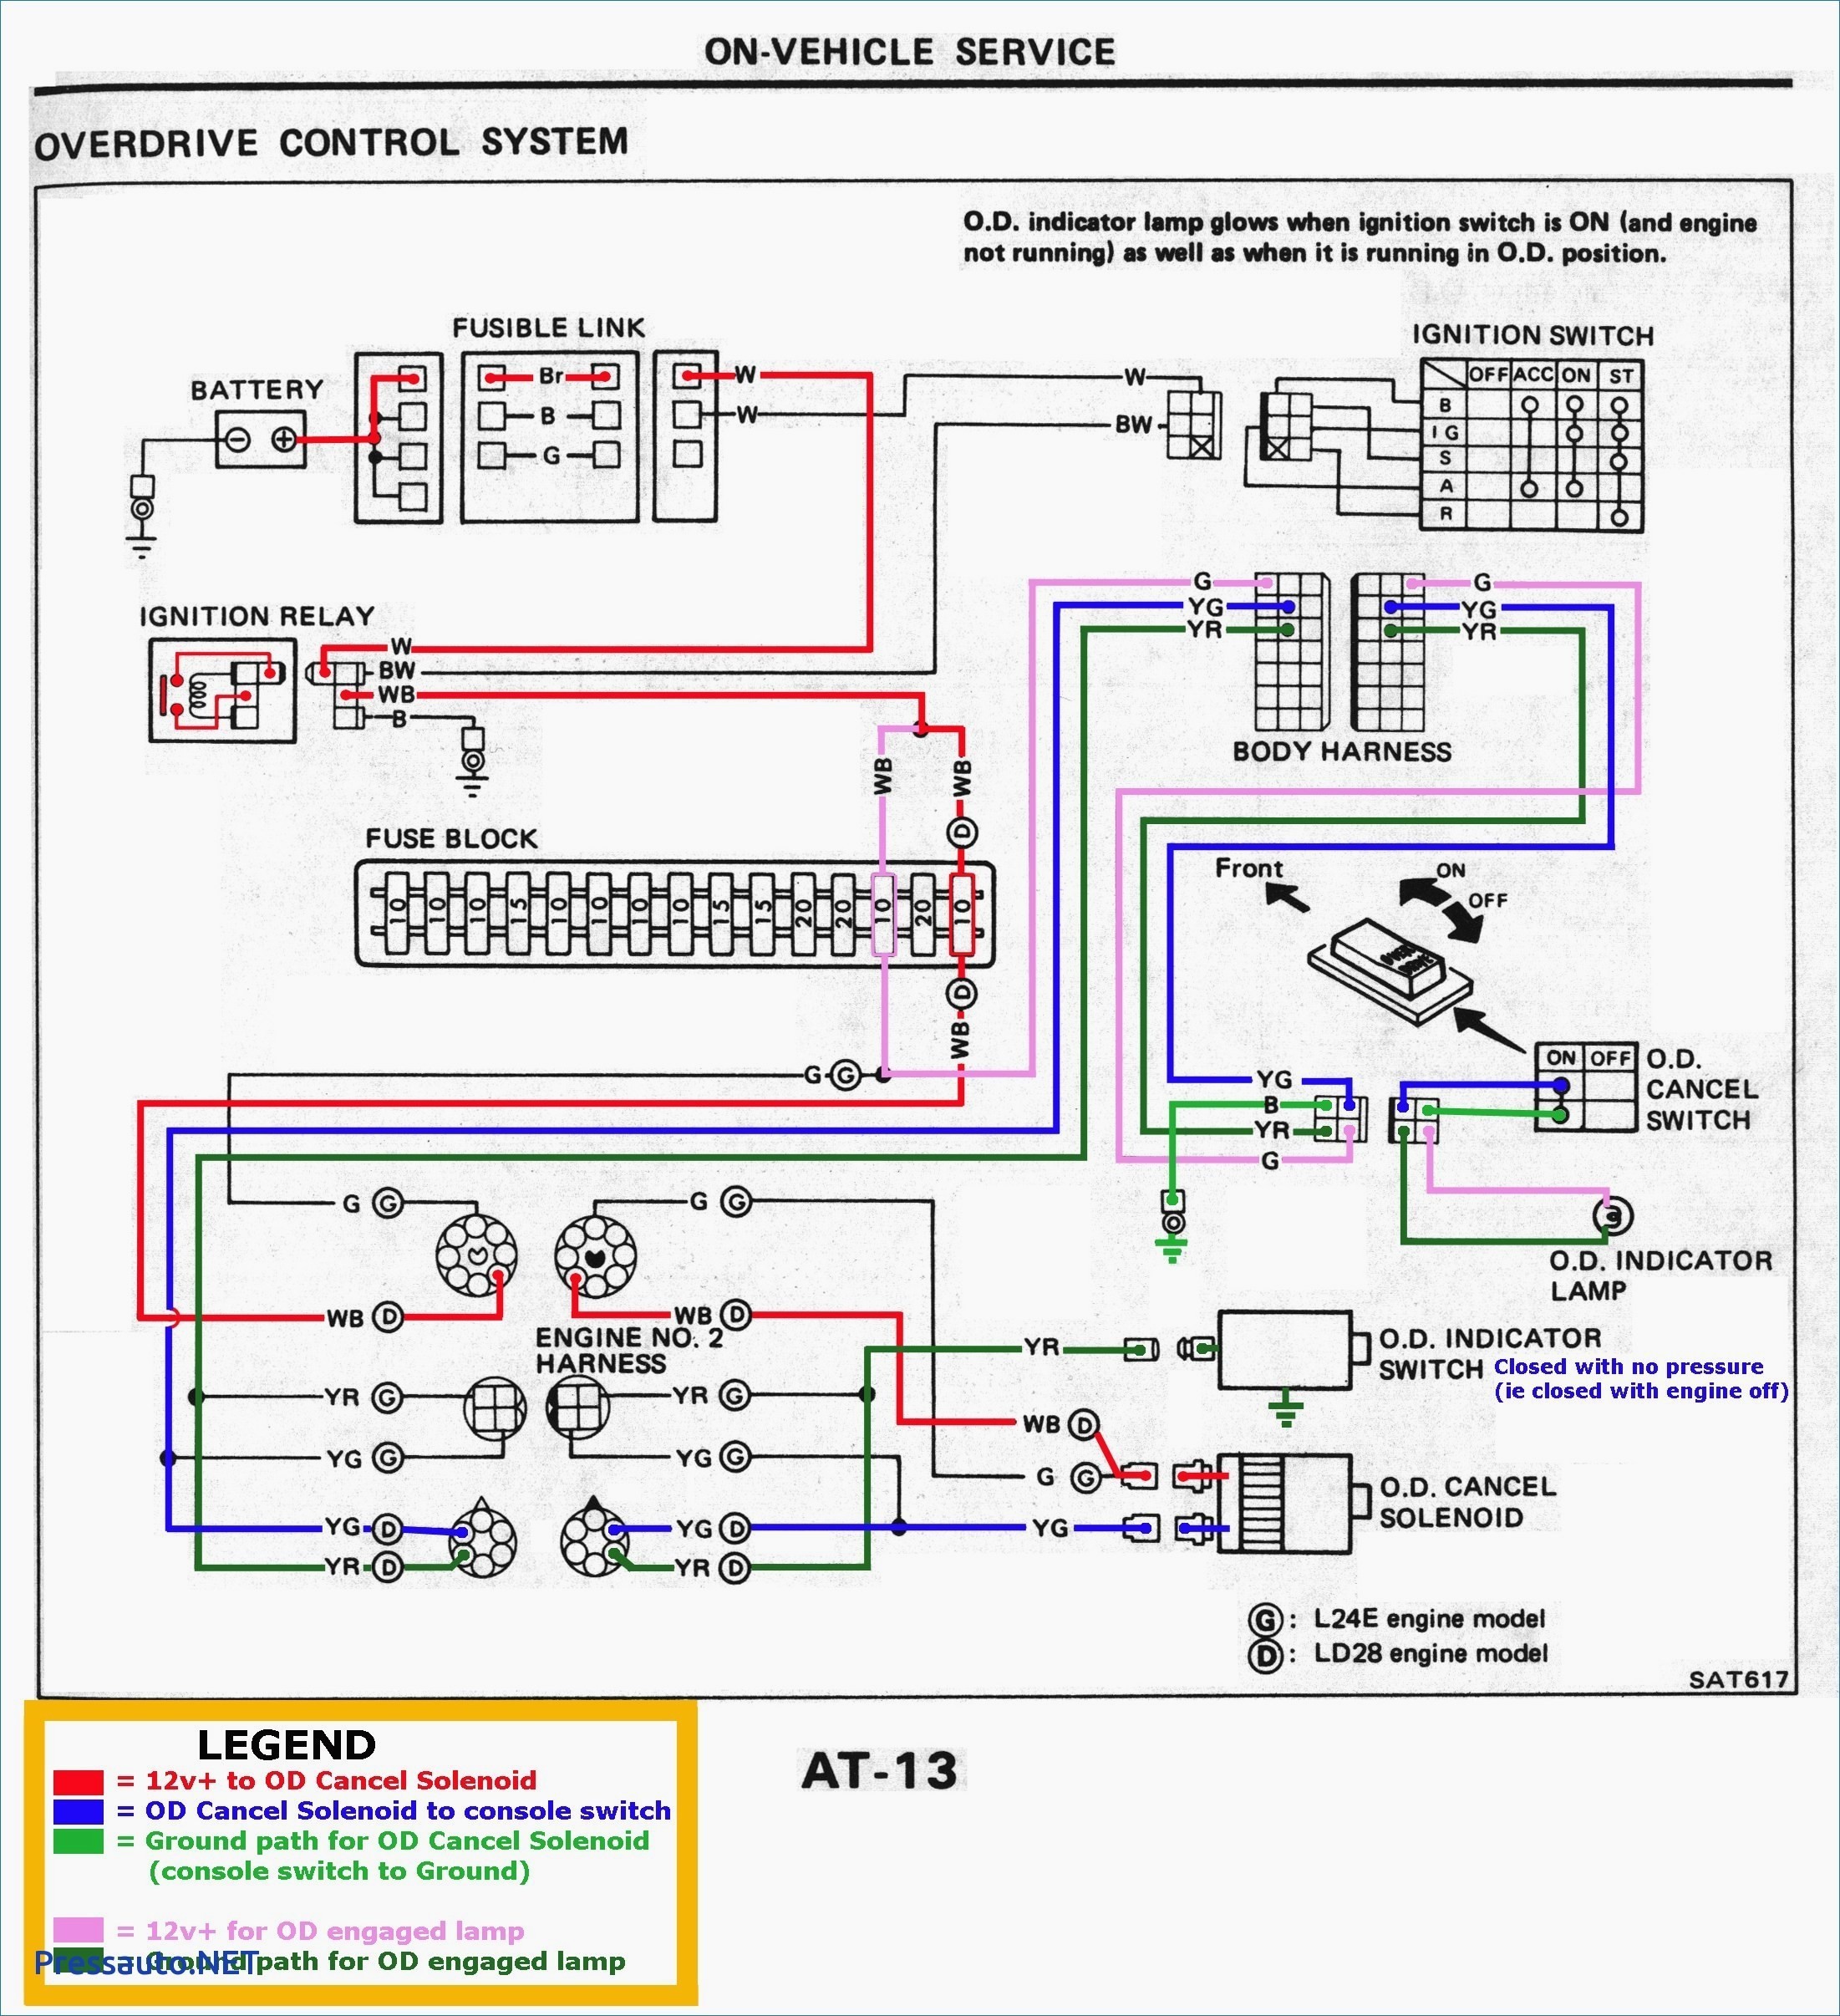 John Deere 100 Wiring Schematic John Deere 100 Series Wiring Diagram Of John Deere 100 Wiring Schematic